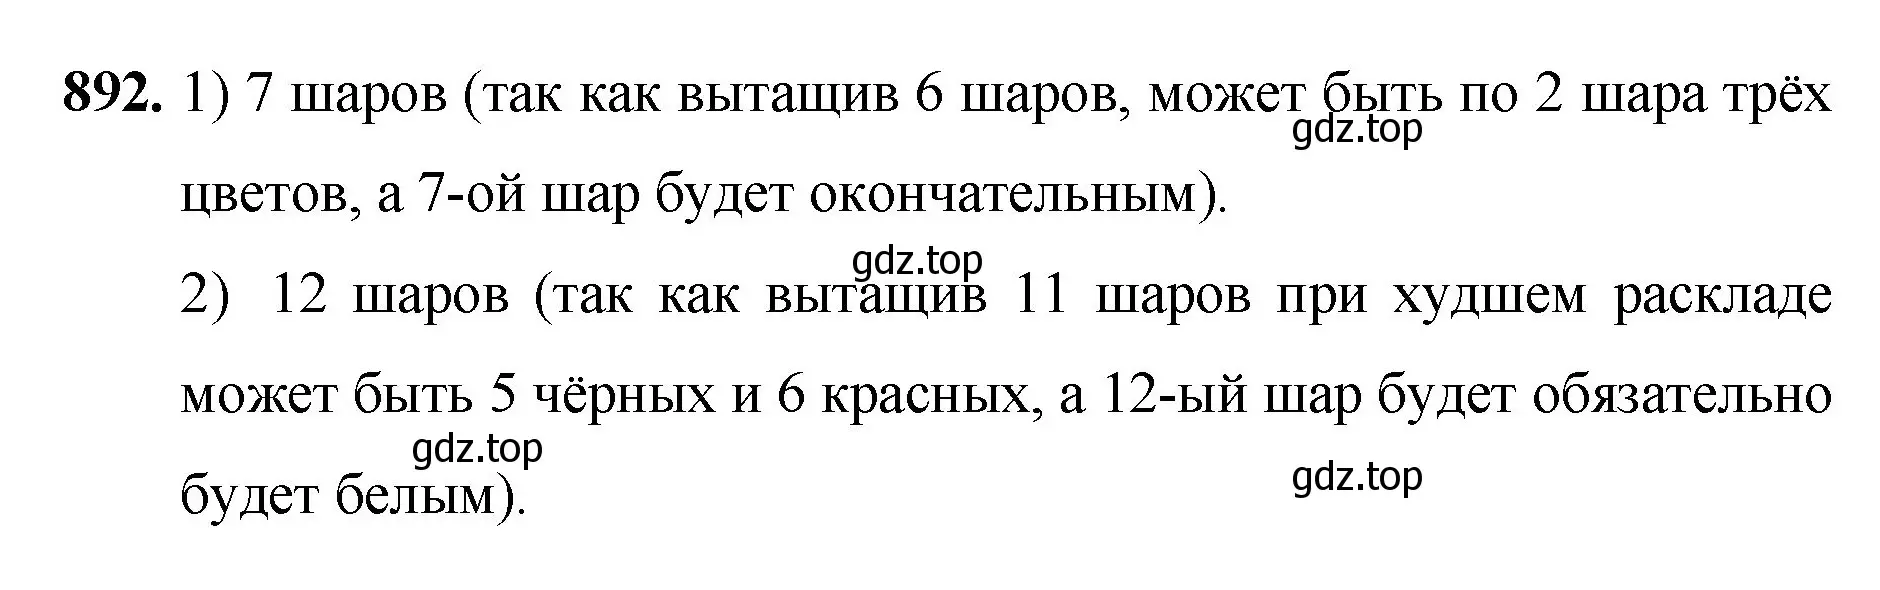 Решение номер 892 (страница 202) гдз по математике 5 класс Мерзляк, Полонский, учебник